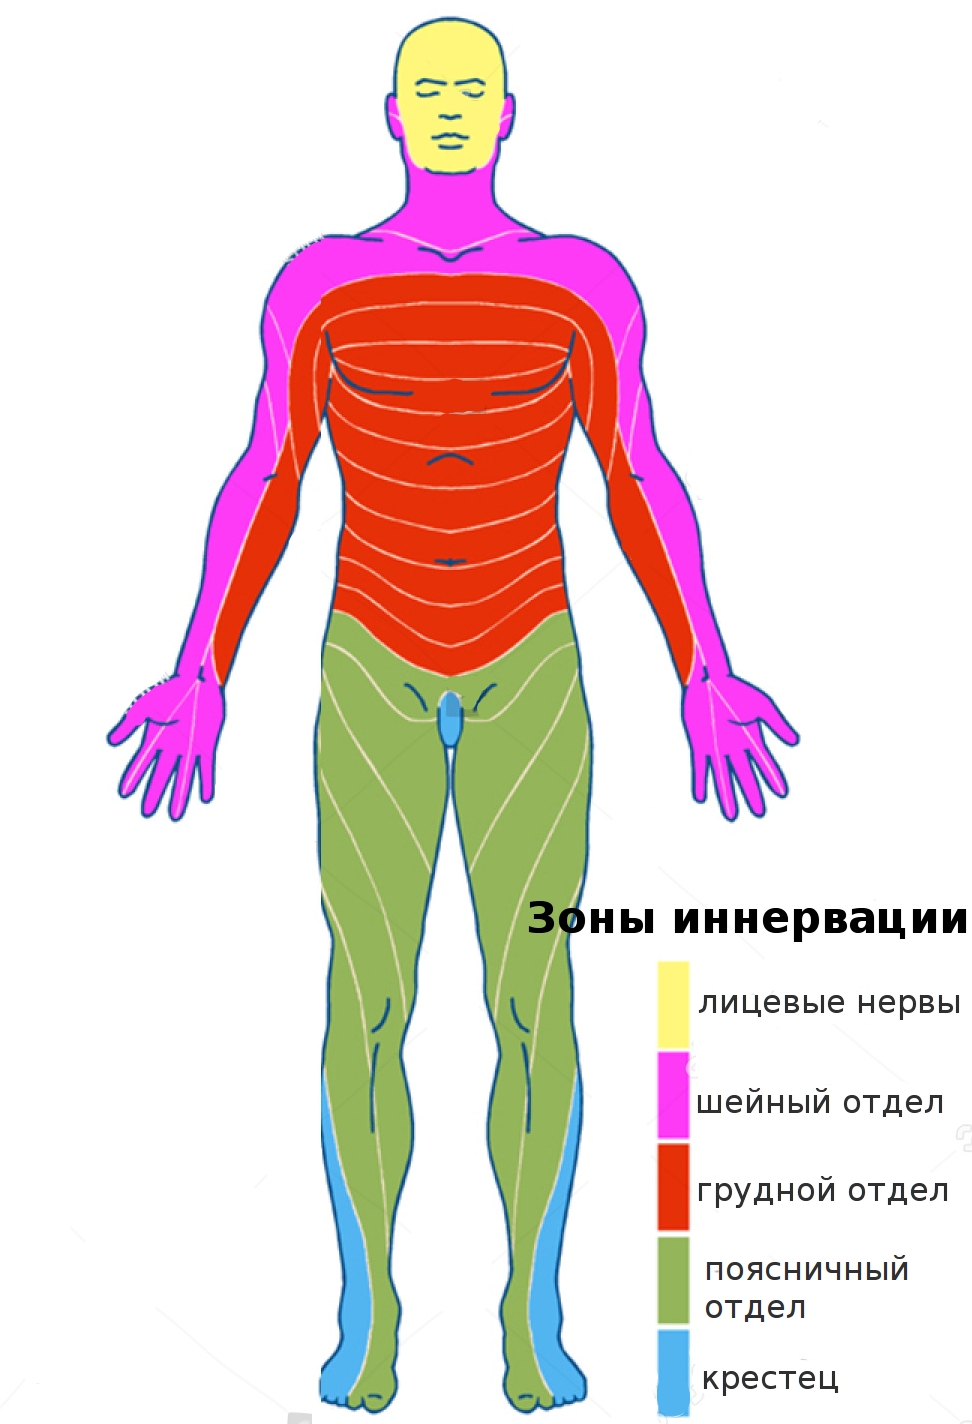 зоны иннервации соответствующих спинномозговых нервов